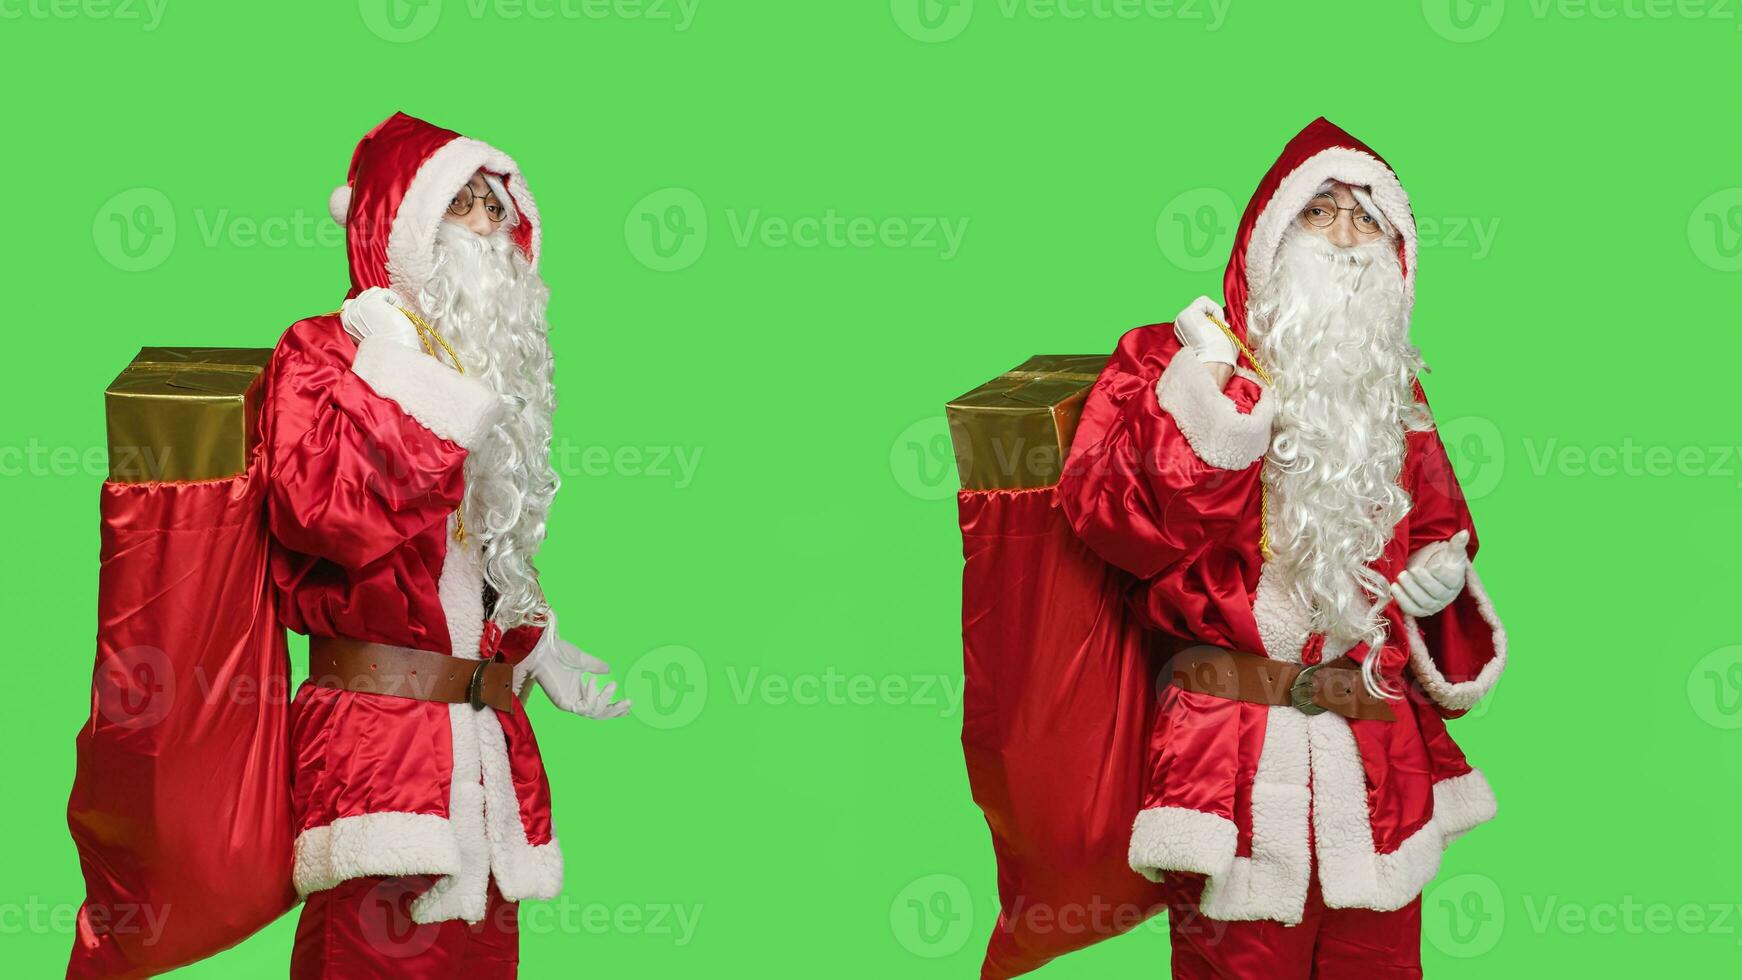 Père Noël claus cosplay spectacles commercialisation un d contre écran vert toile de fond, posant avec sac de cadeaux à afficher hiver vacances saison avec principale personnage. père Noël rouge costume. photo